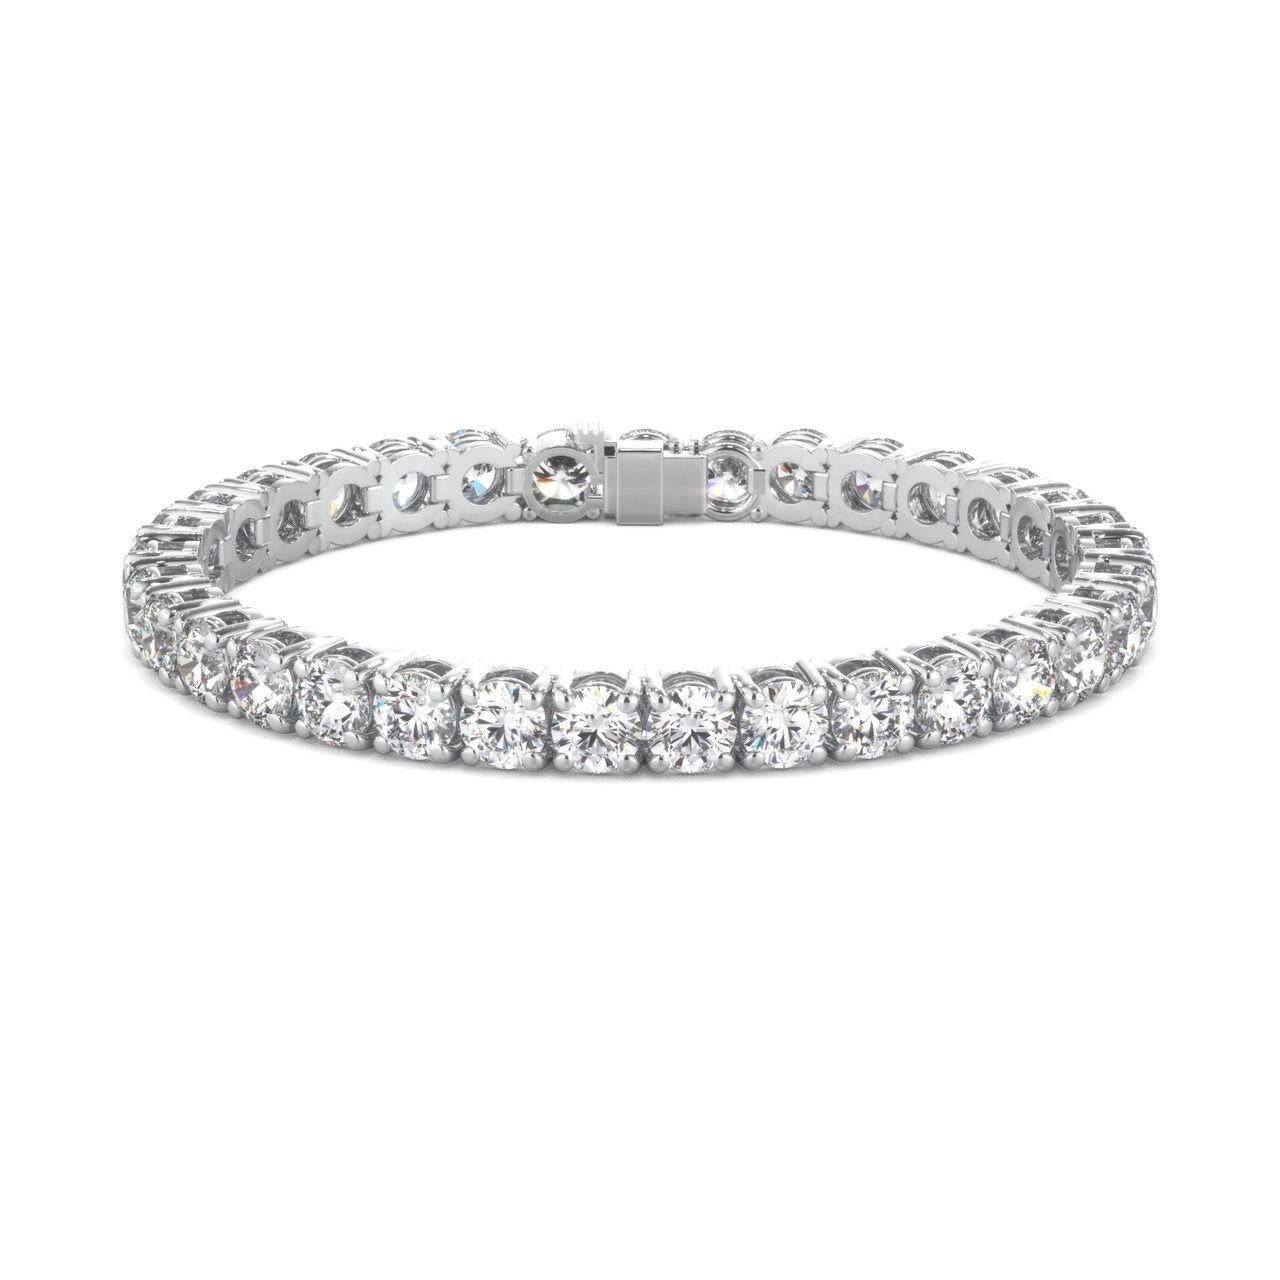 Ce merveilleux bracelet de tennis en diamants est doté d'une agréable ligne aérienne à 4 branches. Il comporte également des diamants ronds d'une valeur totale de 5,50 carats.
F COLOR
CLARTÉ VS1/VS2

long 7.5 pouces 